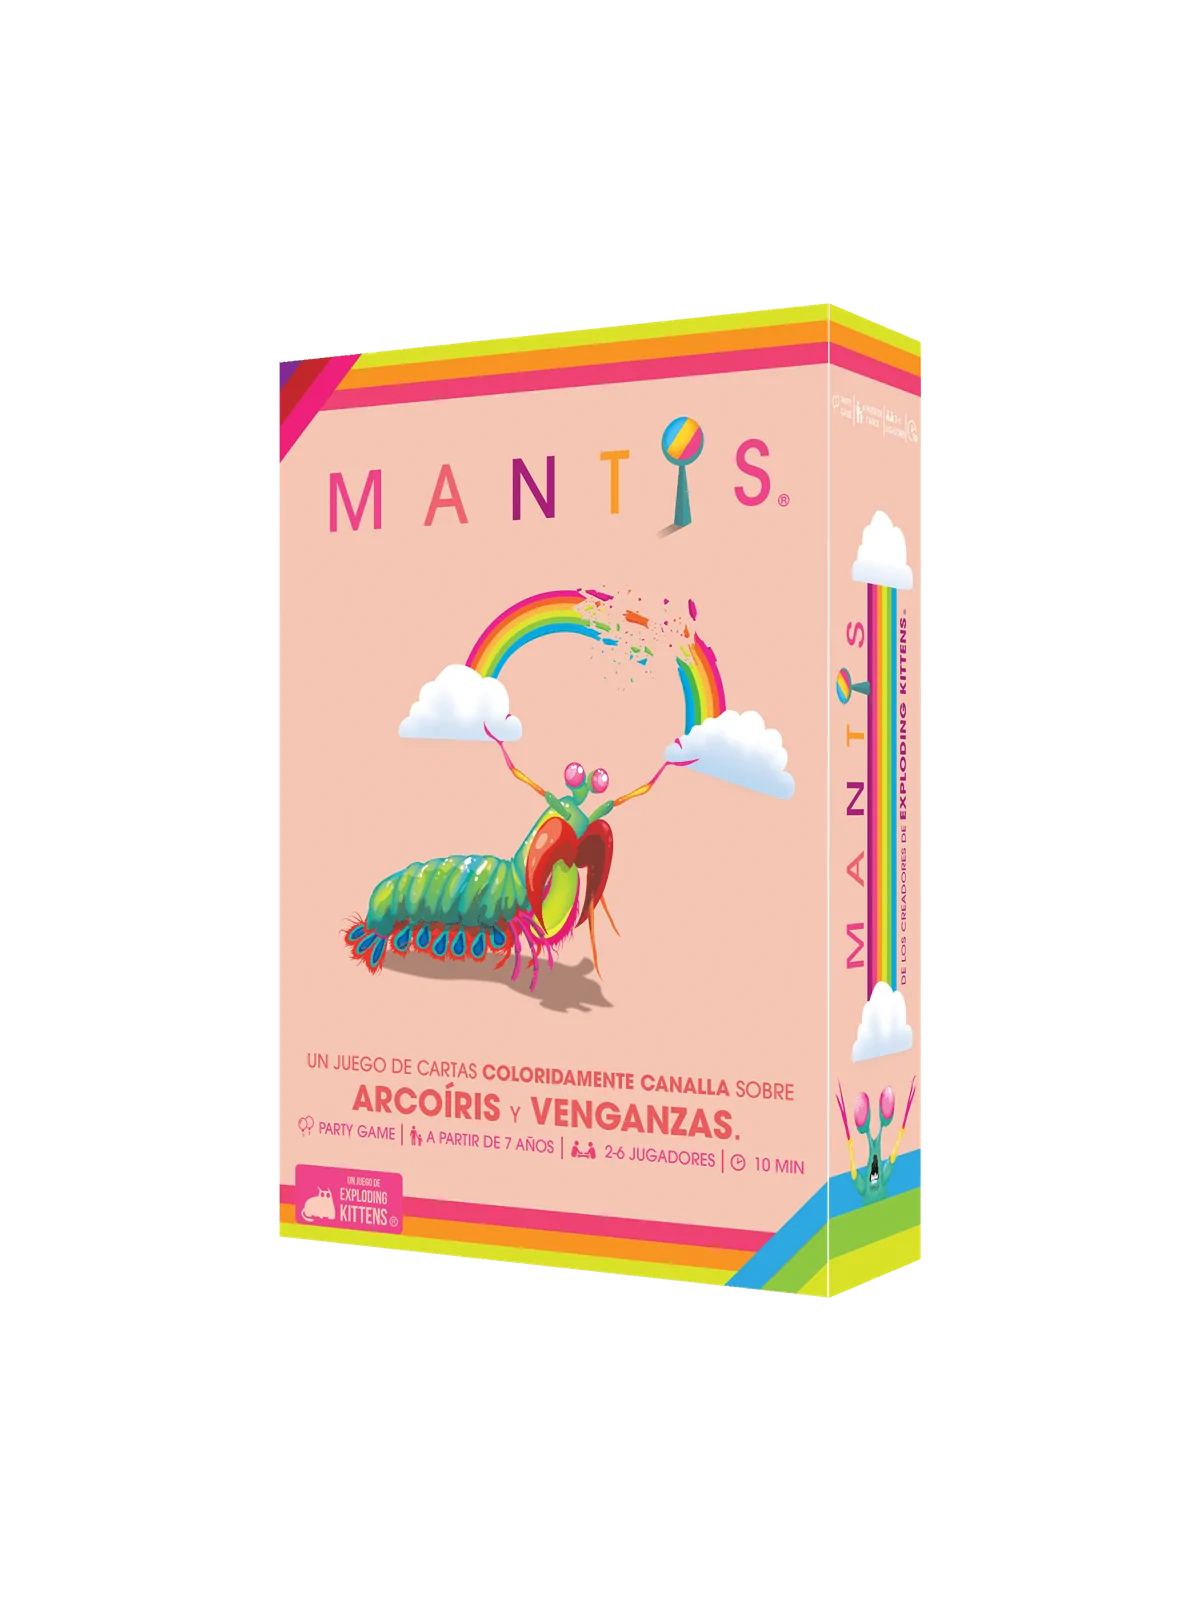 Comprar Mantis barato al mejor precio 24,99 € de Exploding Kittens